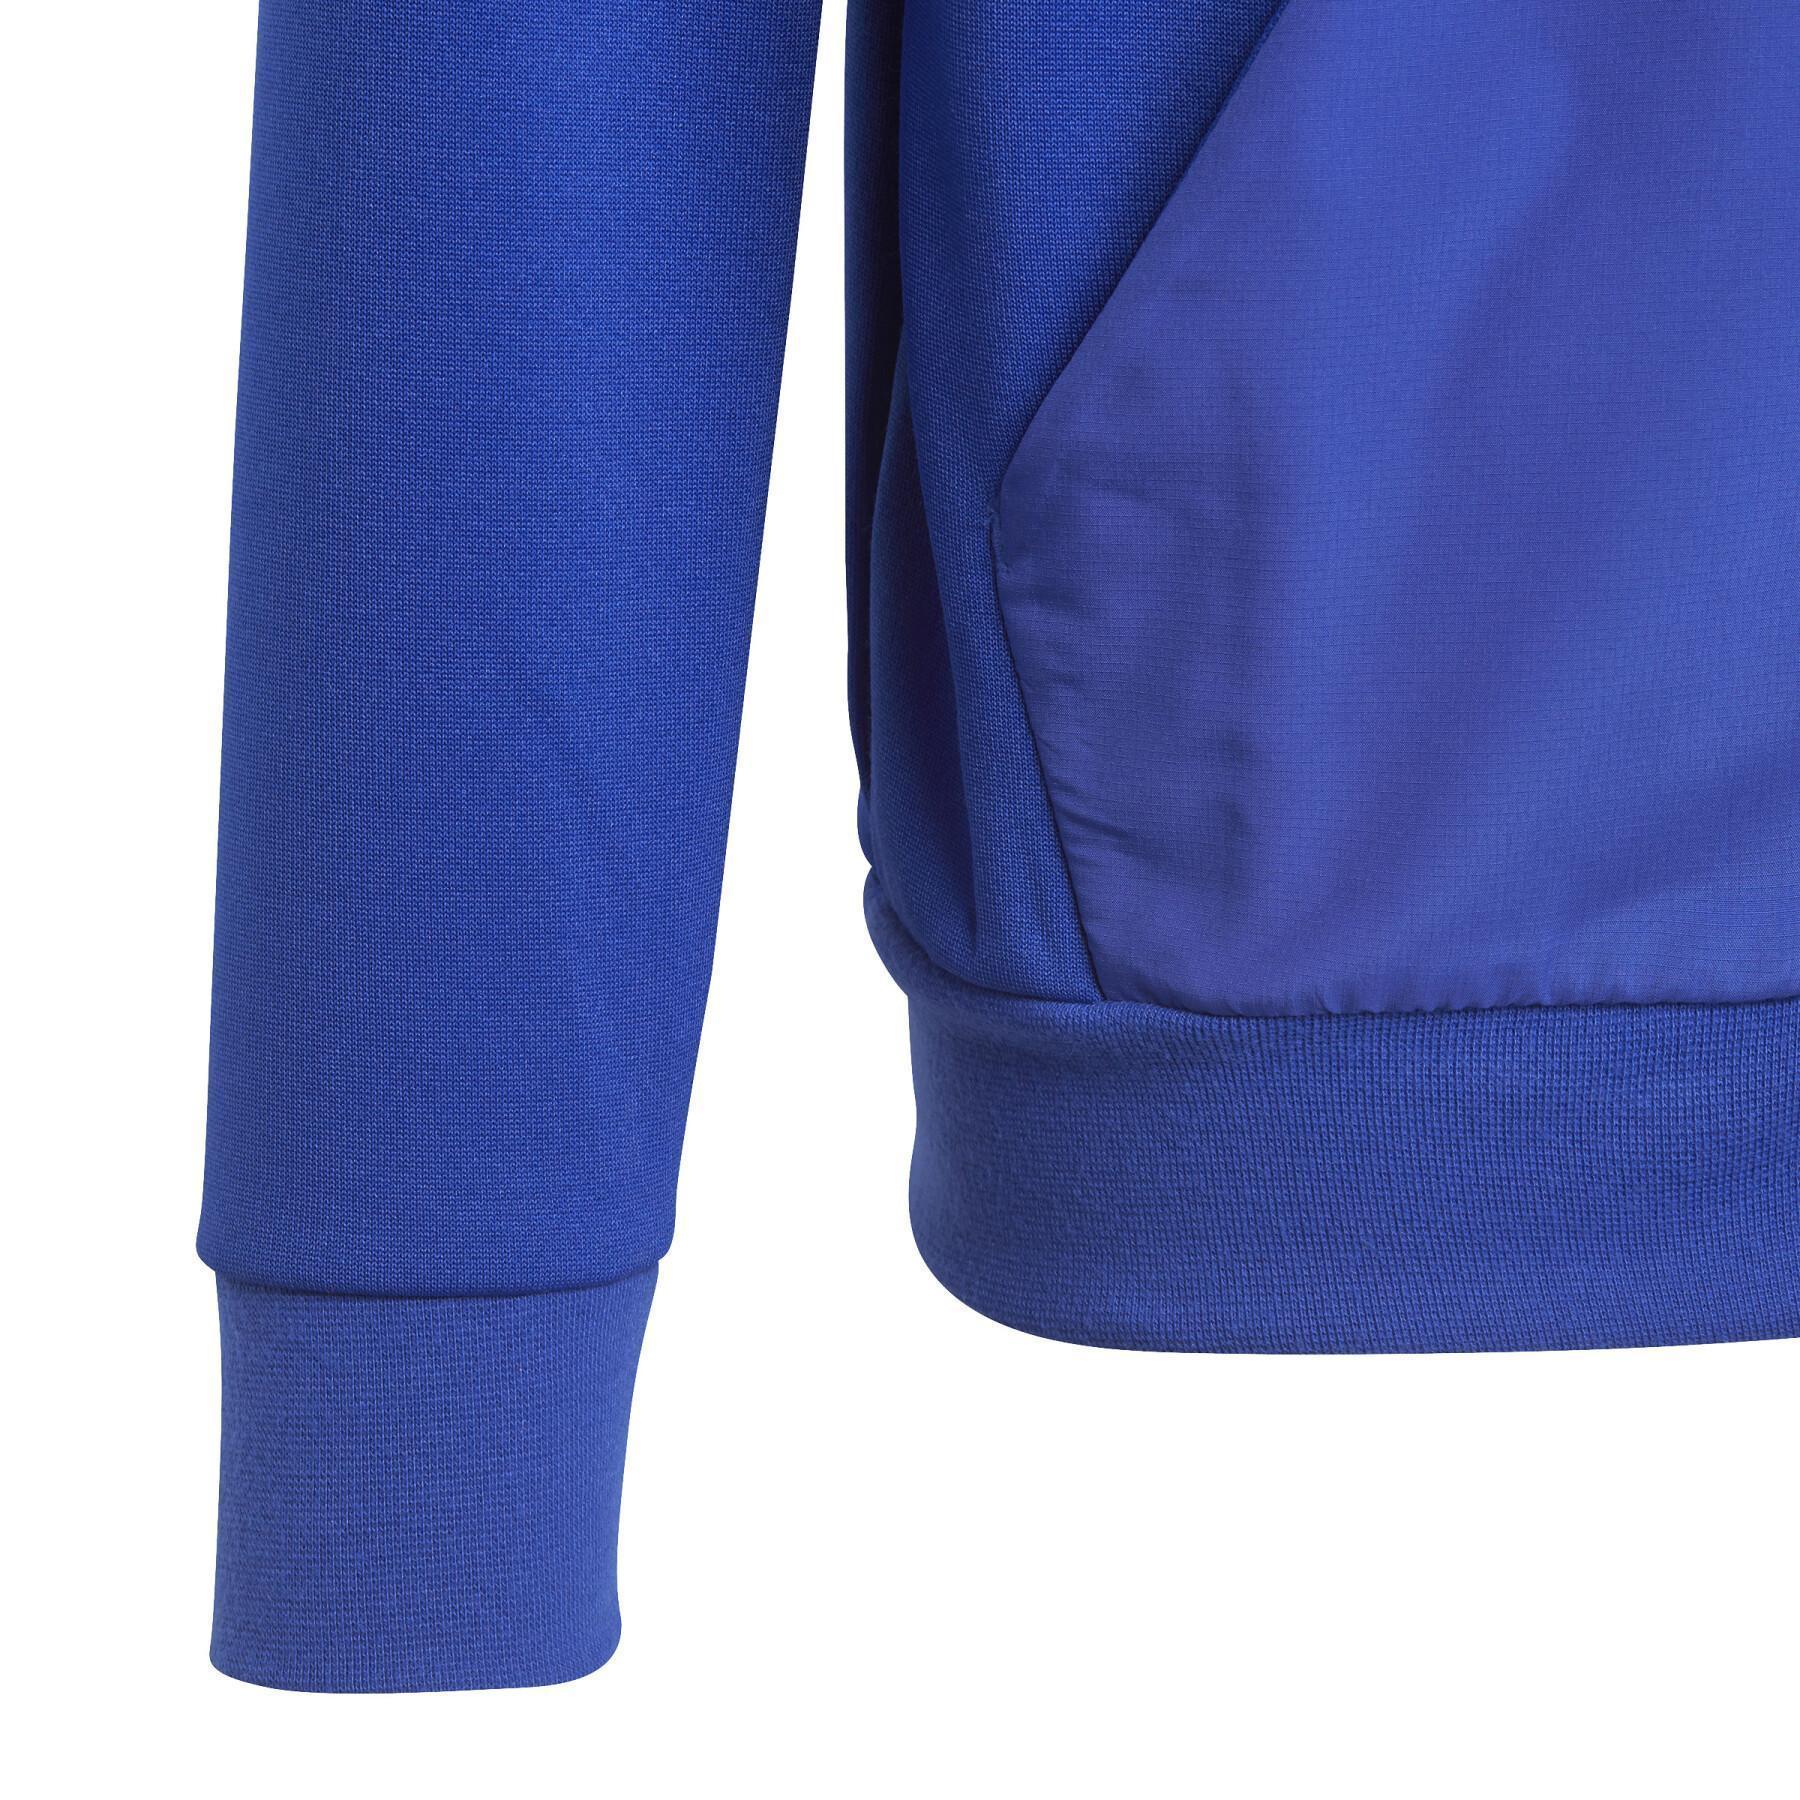 Kinder Kapuzen-Sweatshirt mit Reißverschluss adidas Football-Inspired Predator